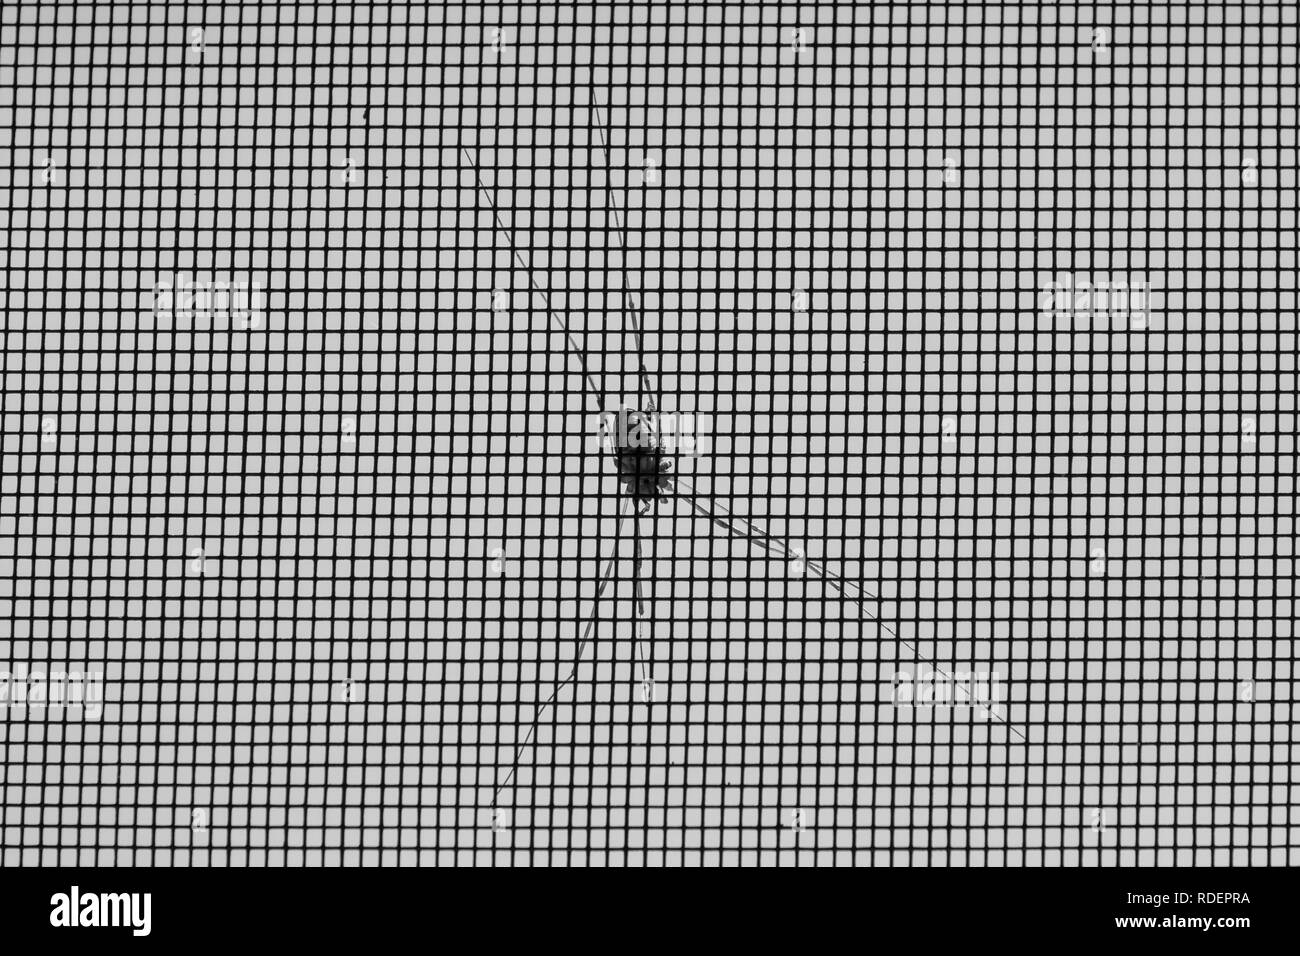 Crociera sul lato esterno di una zanzariera; in bianco e nero Foto Stock